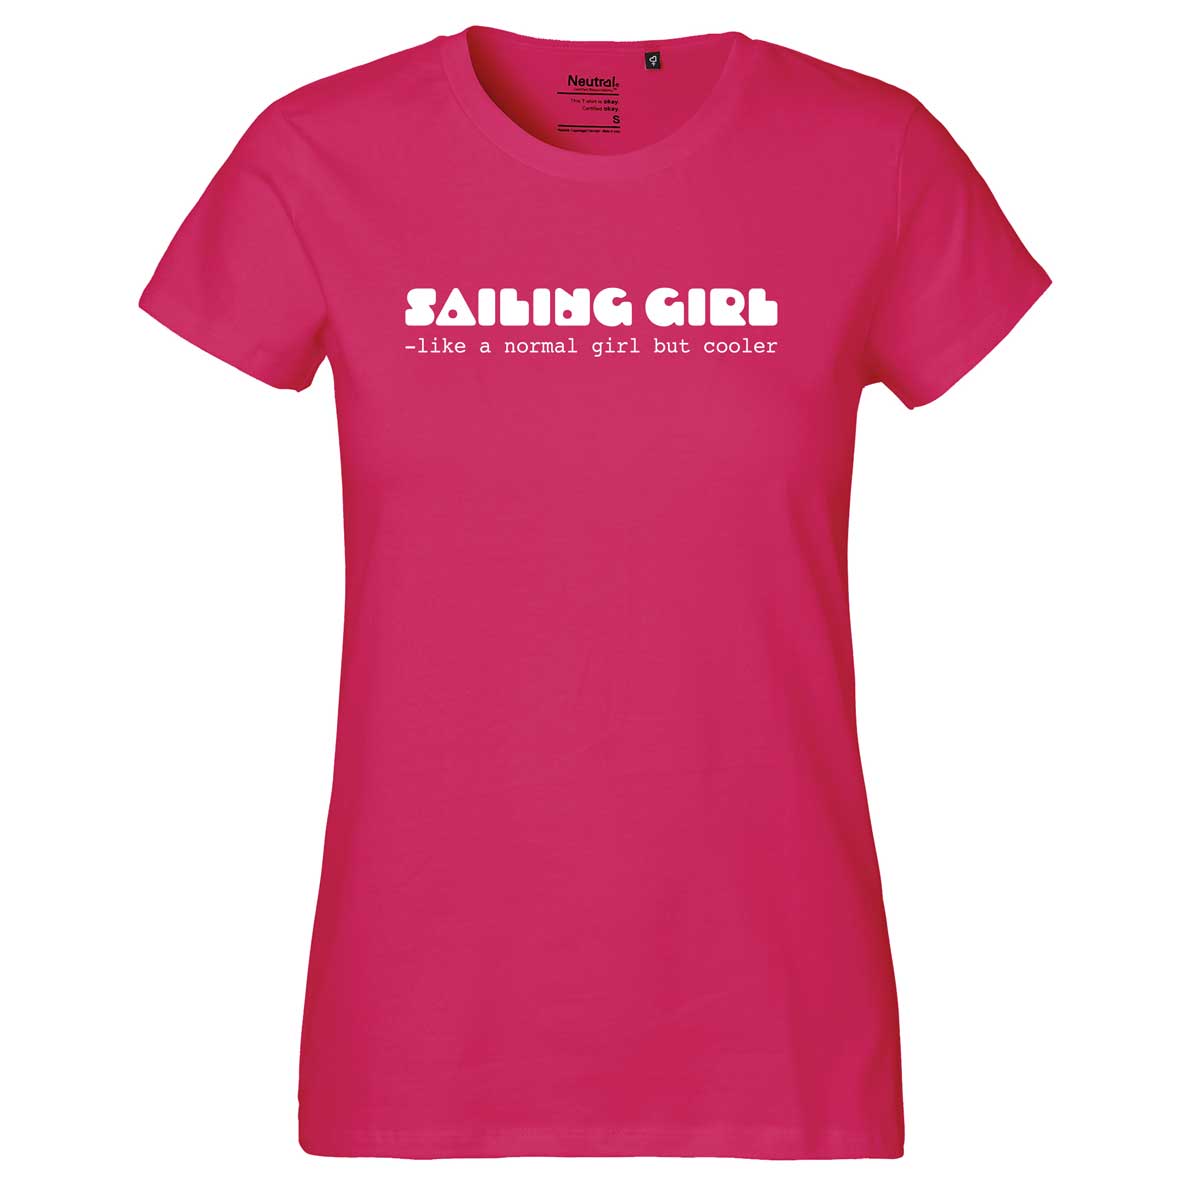 Sailing girl, rosa T-skjorte, damemodell